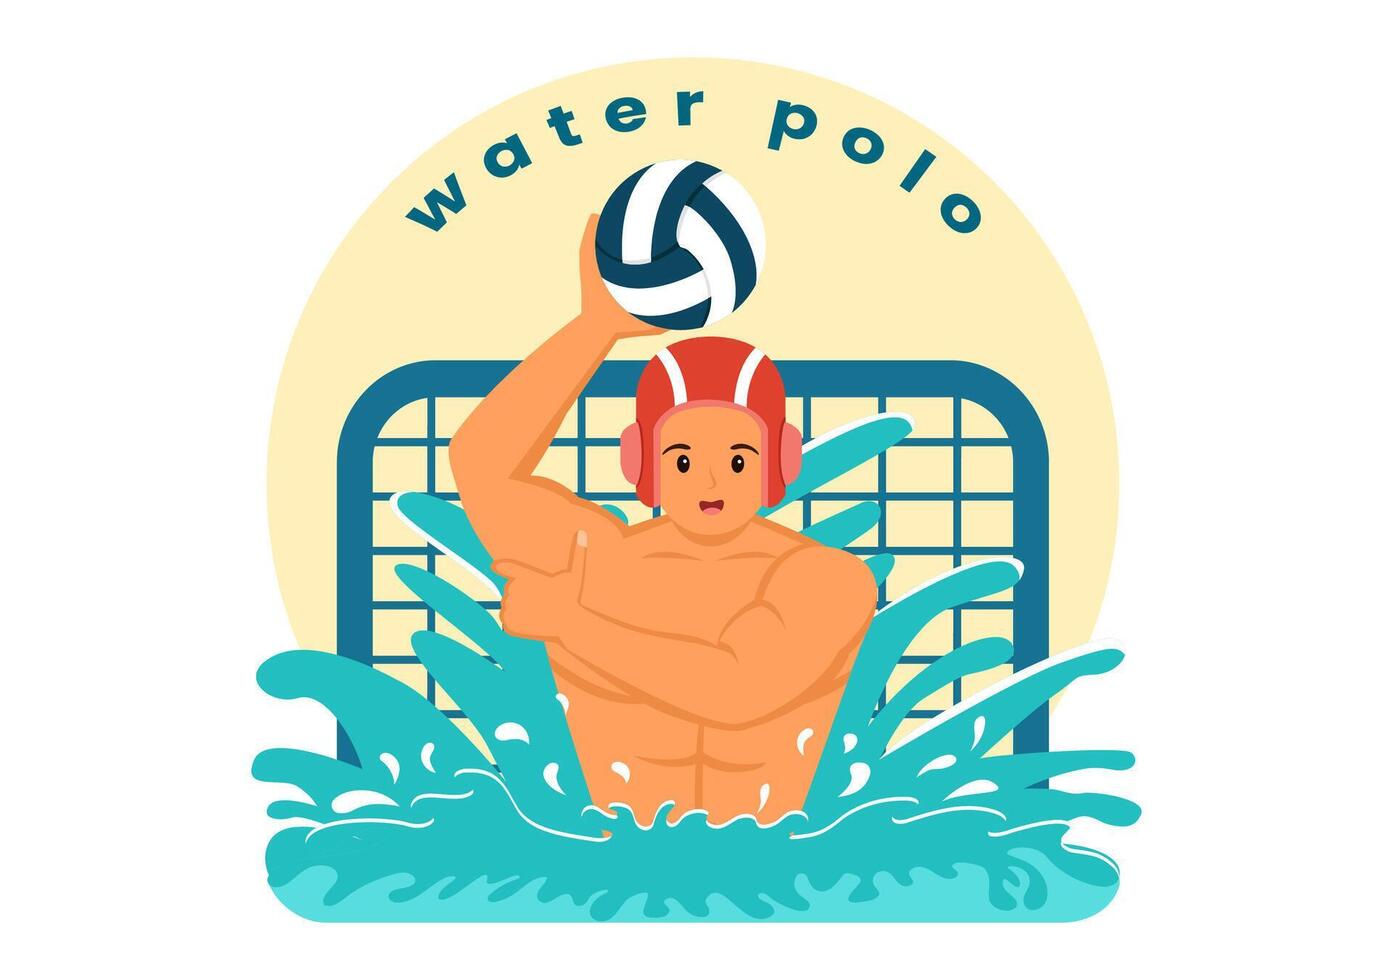 acqua polo sport vettore illustrazione con giocatore giocando per gettare il palla su il avversari obbiettivo nel il nuoto piscina nel piatto cartone animato sfondo